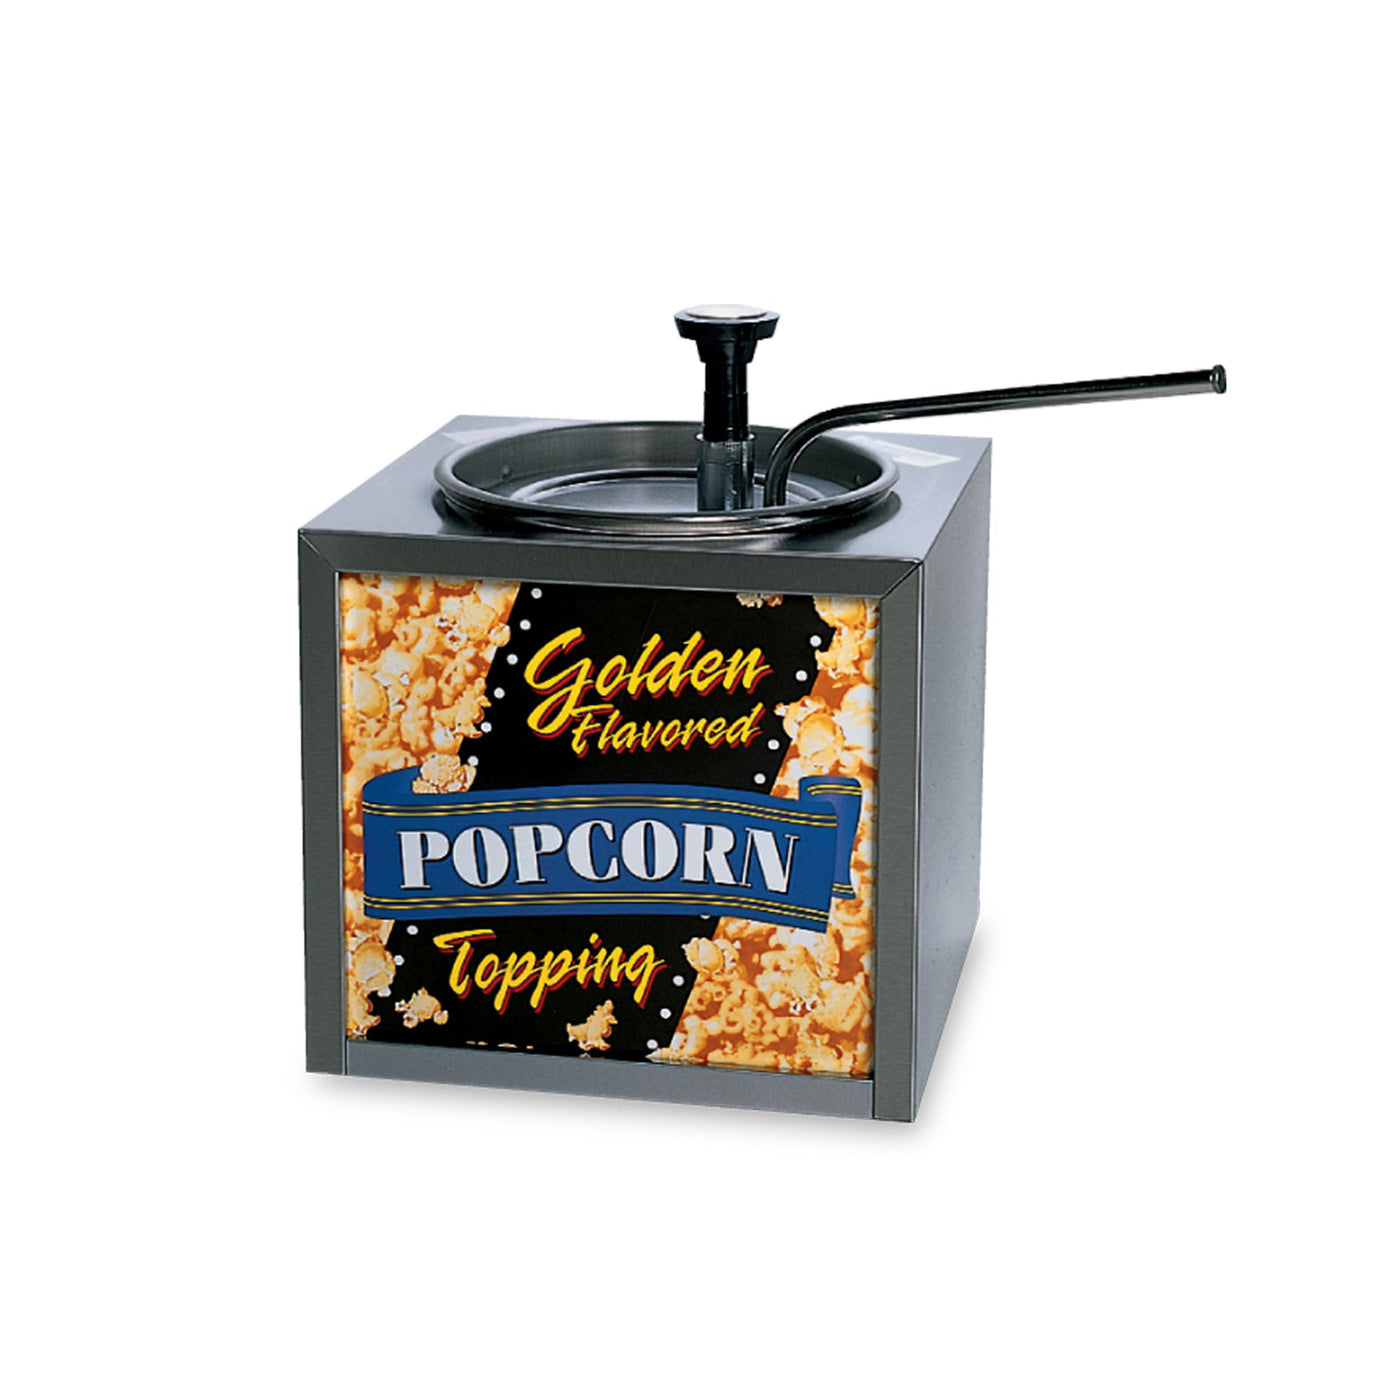 Popcorn Topping Dispenser